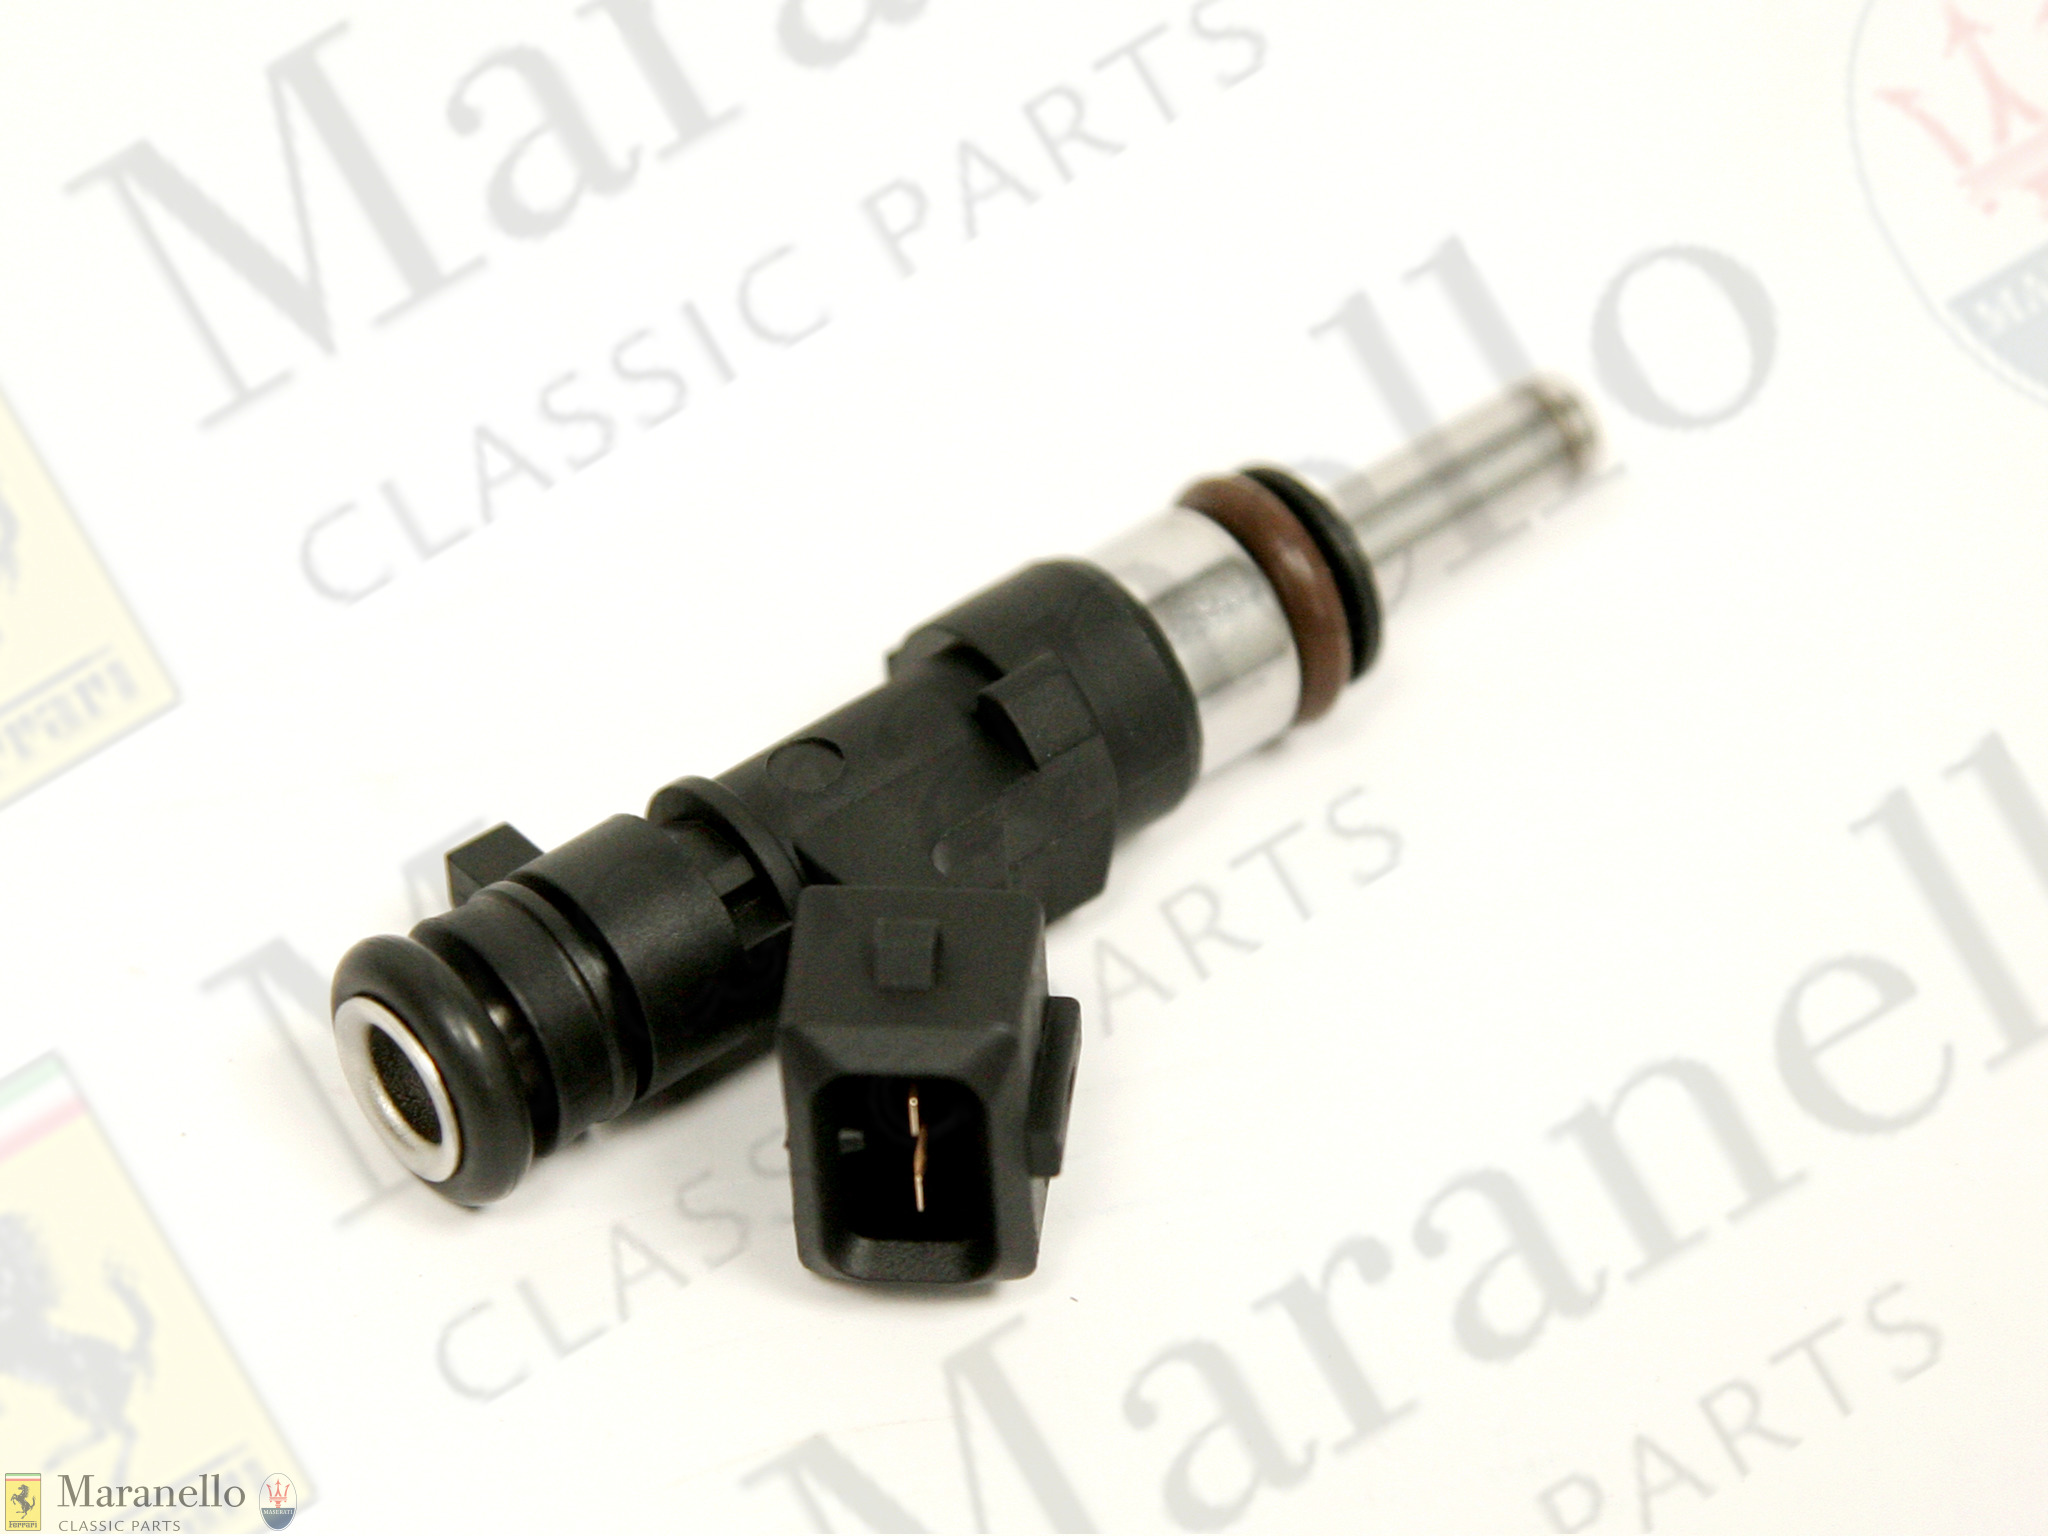 Ferrari part 213635 - Fuel Injector | Maranello Classic Parts